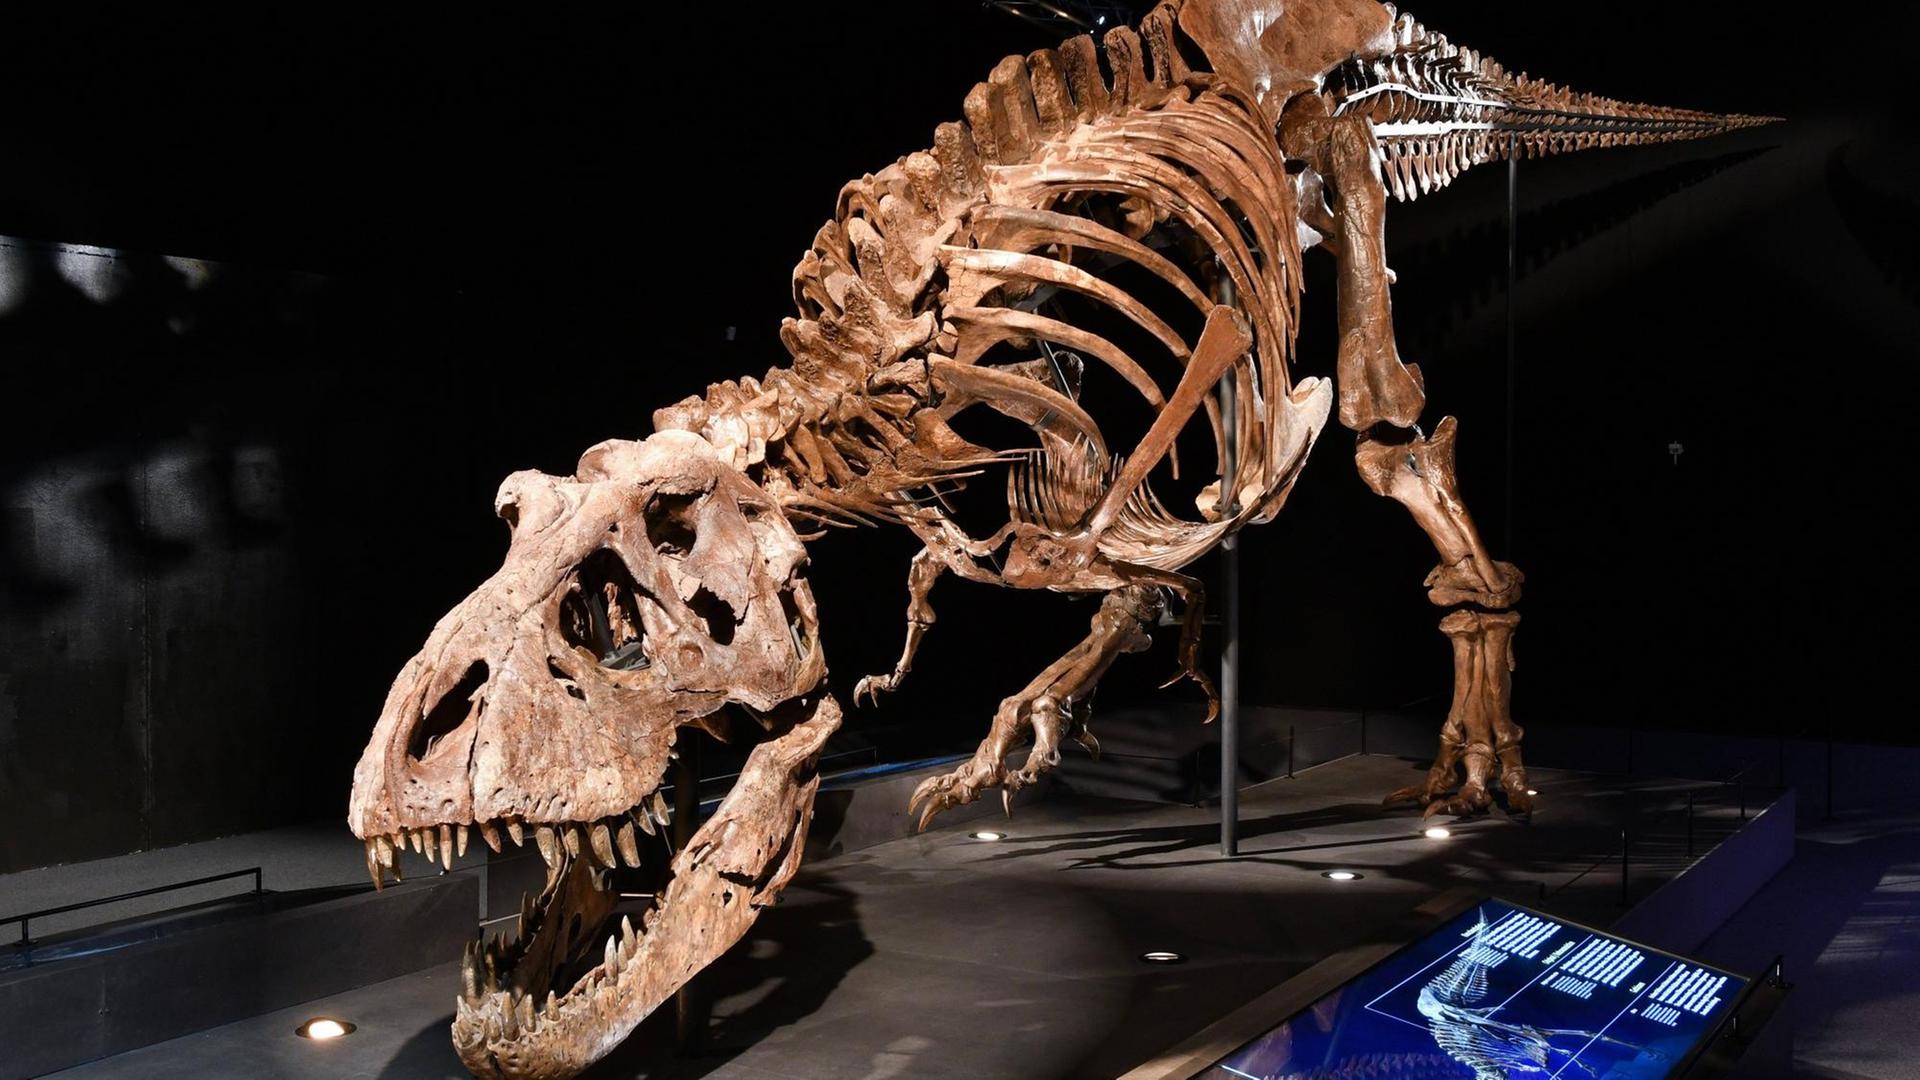 Skelett eines originalen Skeletts eines Dinosaurus T.rex das am Gut Aiderbichl im Rahmen einer Dinosaurier Ausstellung Dino-Live in einer entsprechenden Halle aufgebaut ist. Das Skelett ist 12 Meter lang und 5 Meter hoch. Dieses Bild zeigt eine Schrägansicht des Skeletts 2017 - Skelett eines originalen Skeletts eines Dinosaurus T.rex das am Gut Aiderbichl im Rahmen einer Dinosaurier Ausstellung Dino-Live in einer entsprechenden Halle aufgebaut ist. Skeleton a Originals Skeleton a Dinosaurus T Rex the at well Aiderbichl in Frame a Dinosaurs Exhibition Dino Live in a appropriate Hall up is the Skeleton is 12 Metres long and 5 Metres vertical This Picture shows a Oblique the Skeleton 2017 Skeleton a Originals Skeleton a Dinosaurus T Rex the at well Aiderbichl in Frame a Dinosaurs Exhibition Dino Live in a appropriate Hall up is